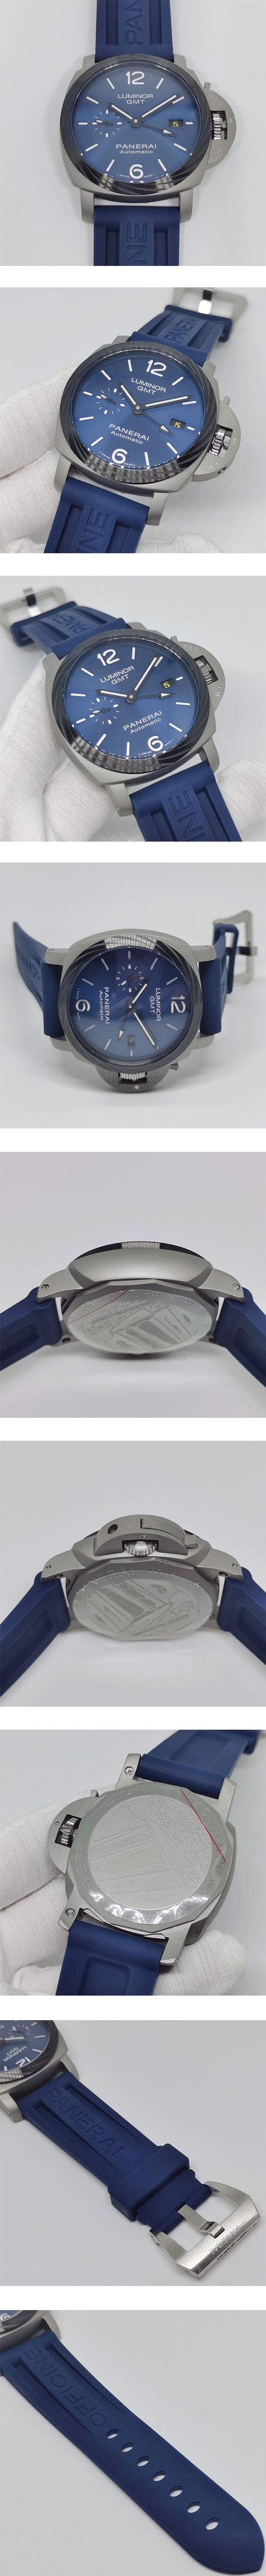 人気新品パネライスーパーコピー時計 ルミノール ブルー文字盤 GMT PAM01279 